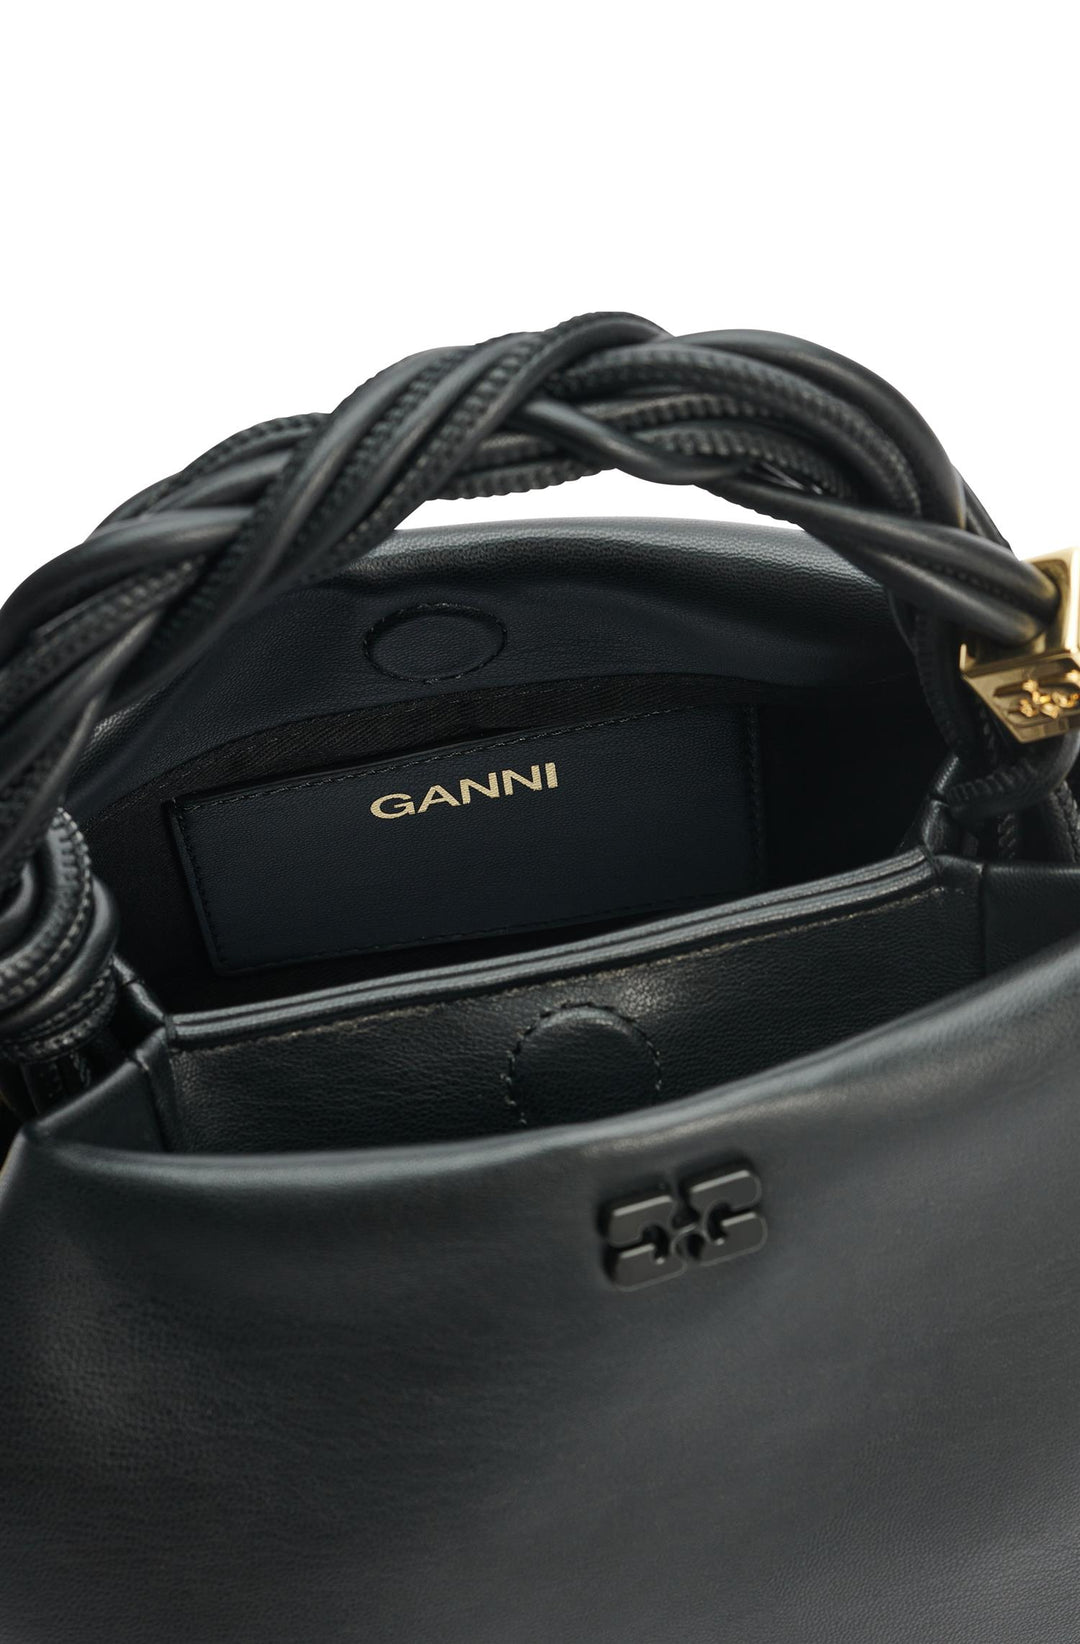 GANNI - Ganni Bou Bag Small - Black - Dale